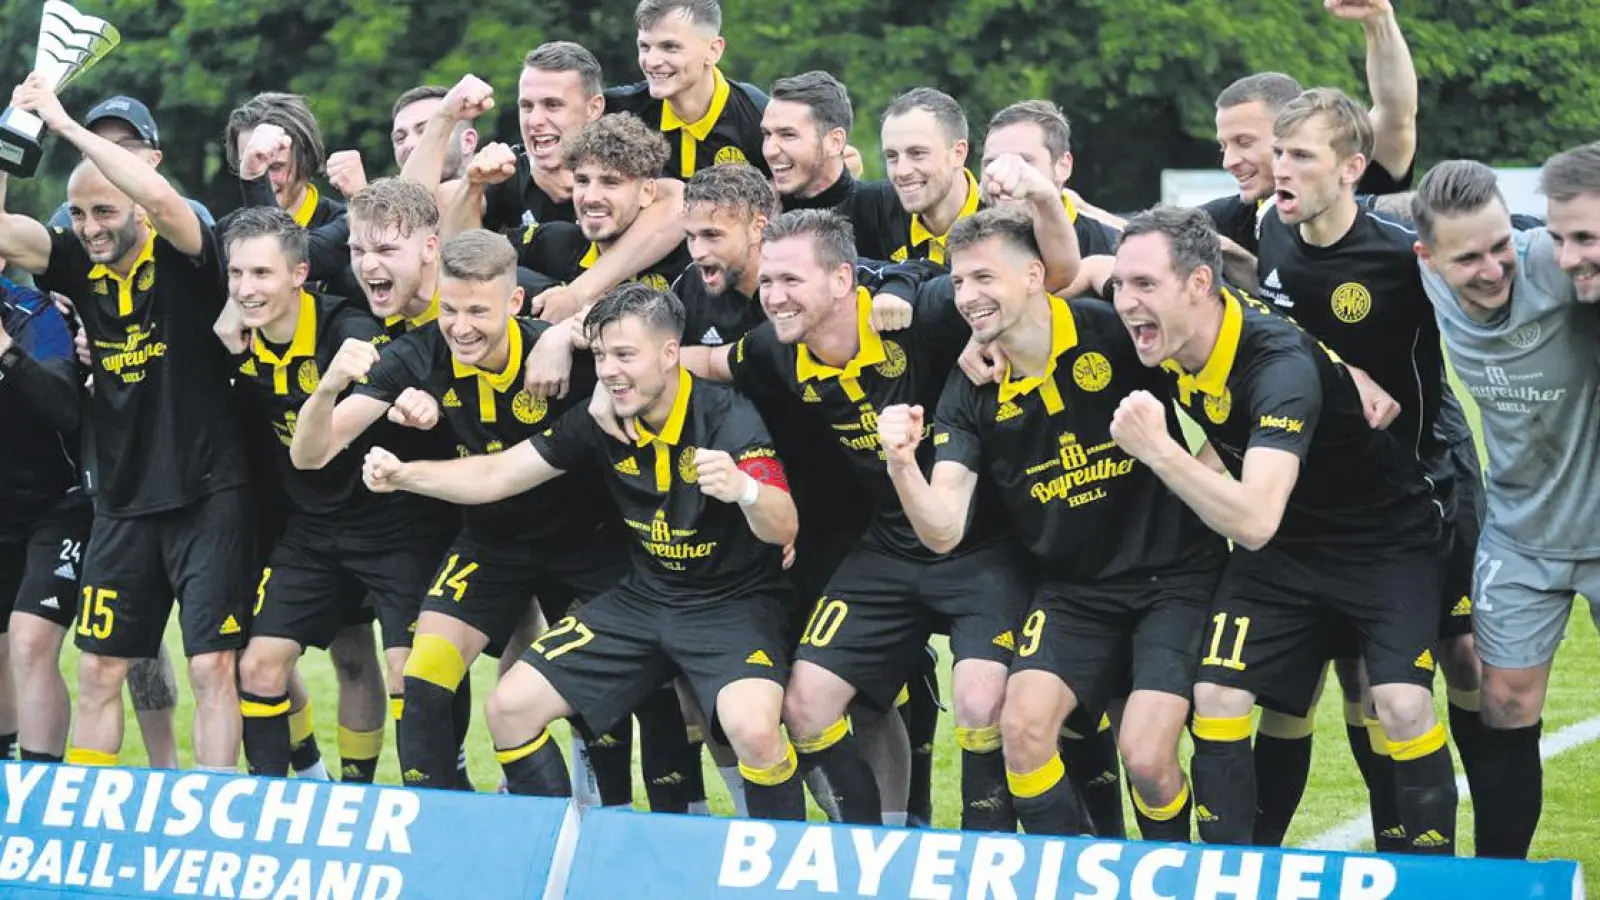 Nach 15 Jahren hat sich die SpVgg Bayreuth wieder für den DFB-Pokal qualifiziert. (Foto: Andi Bär)